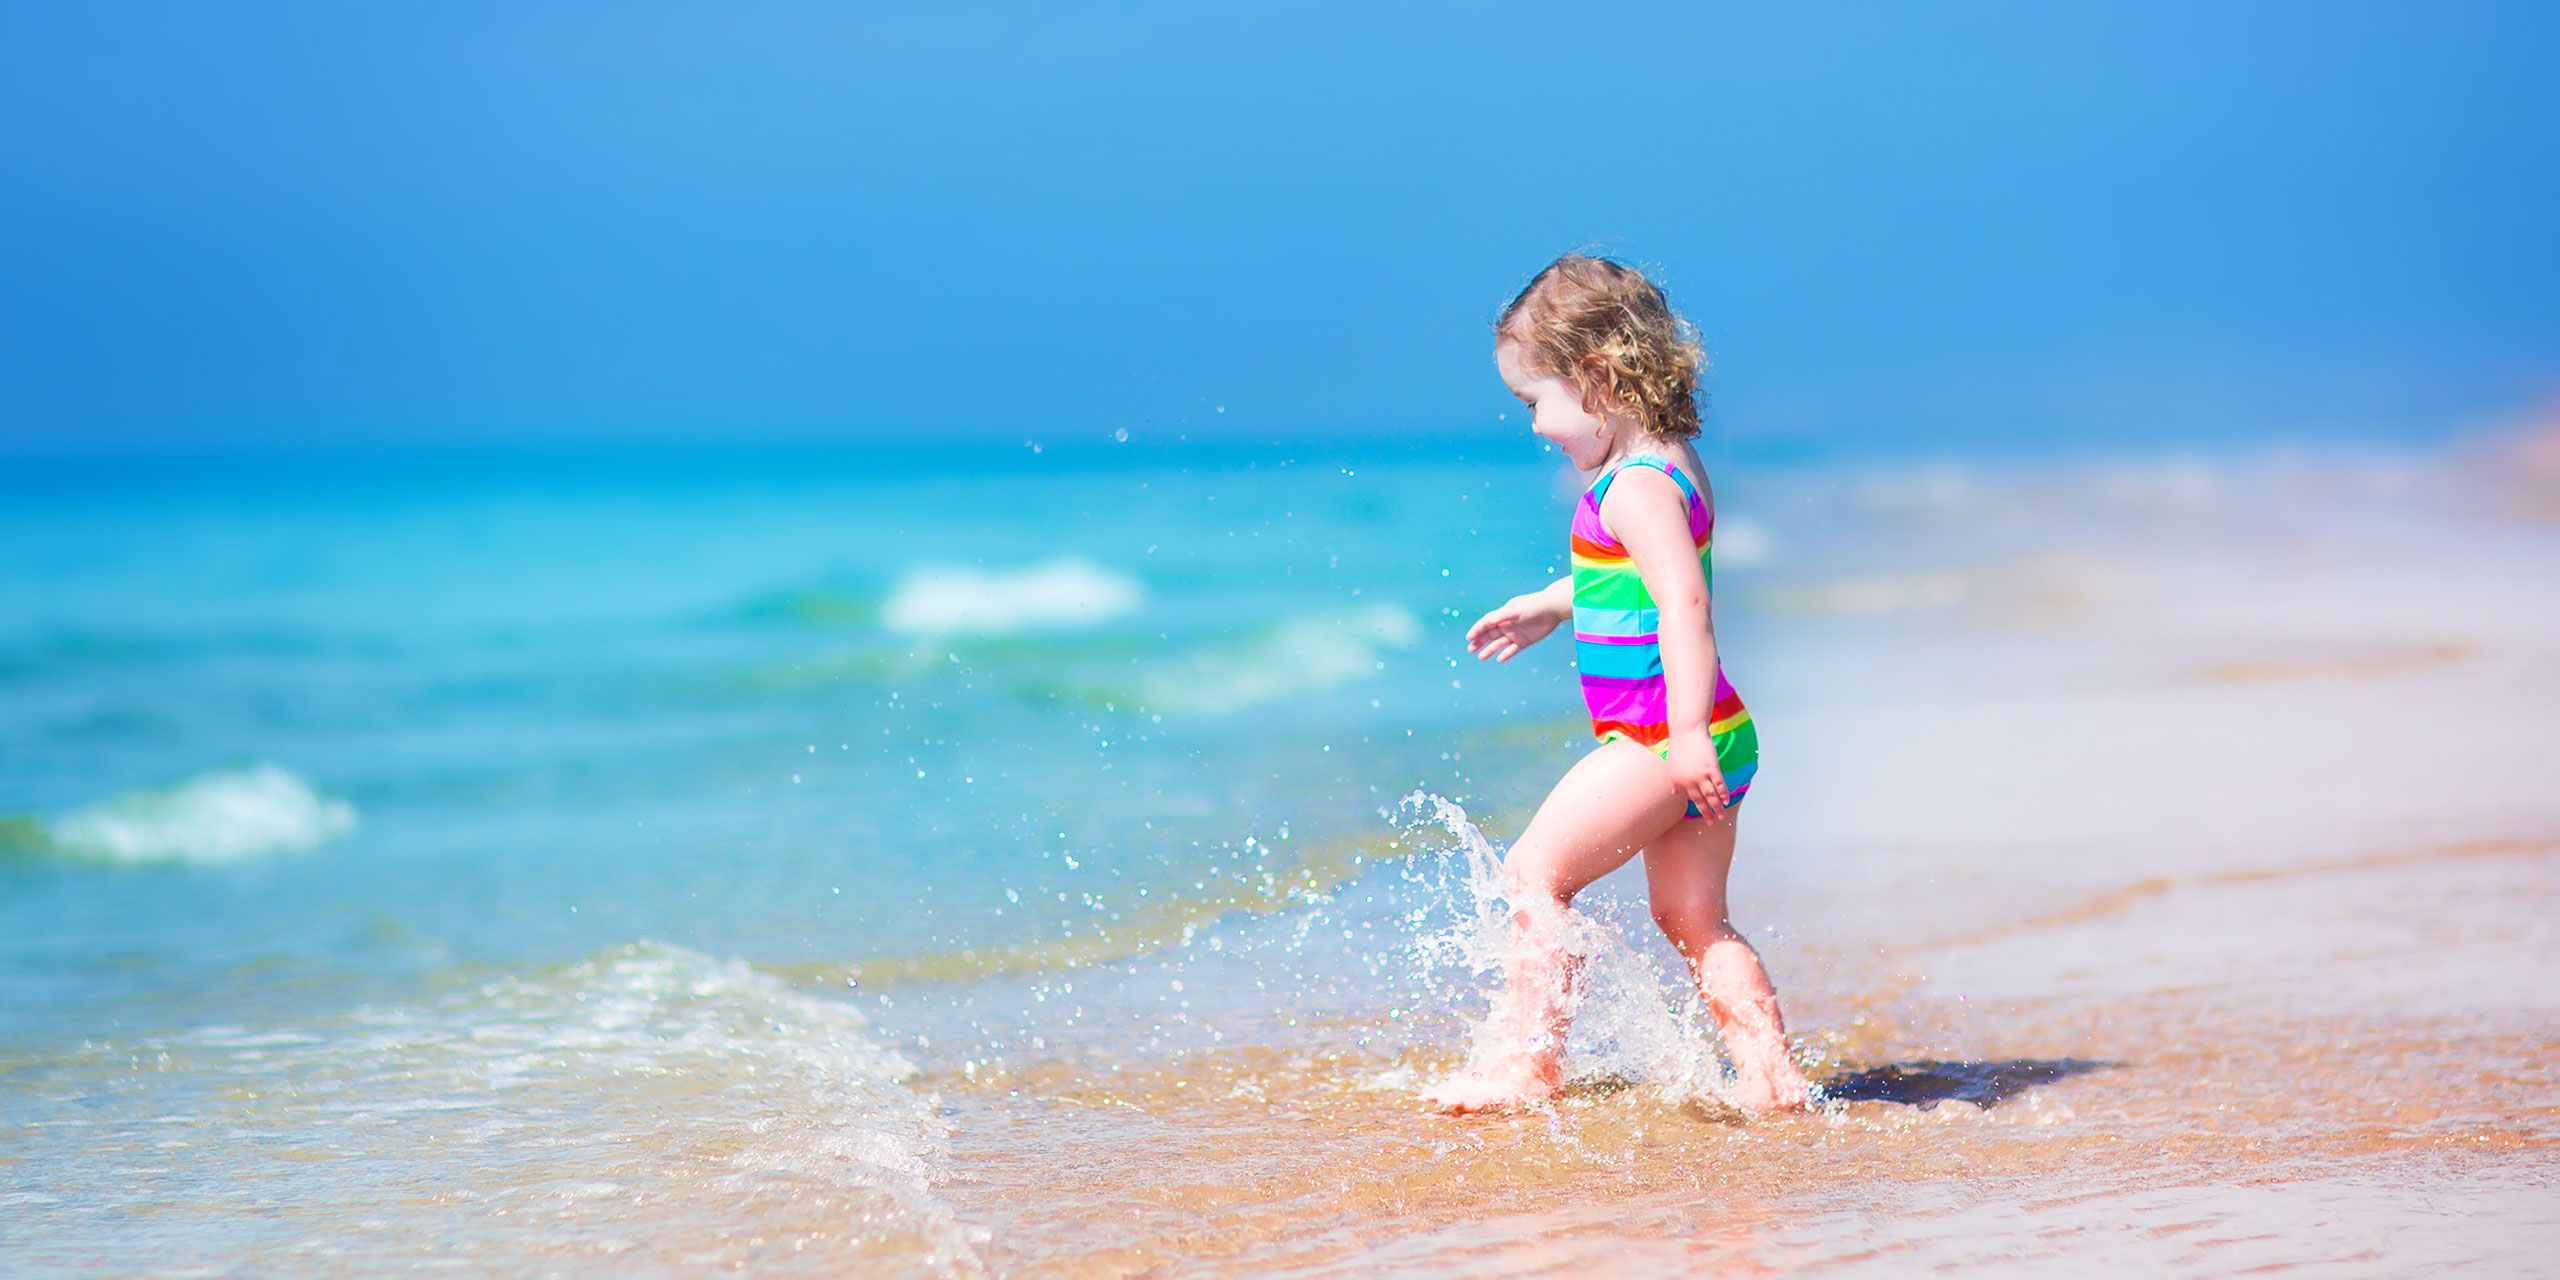 Toddler on the Beach; Courtesy of FamVeld/Shutterstock.com